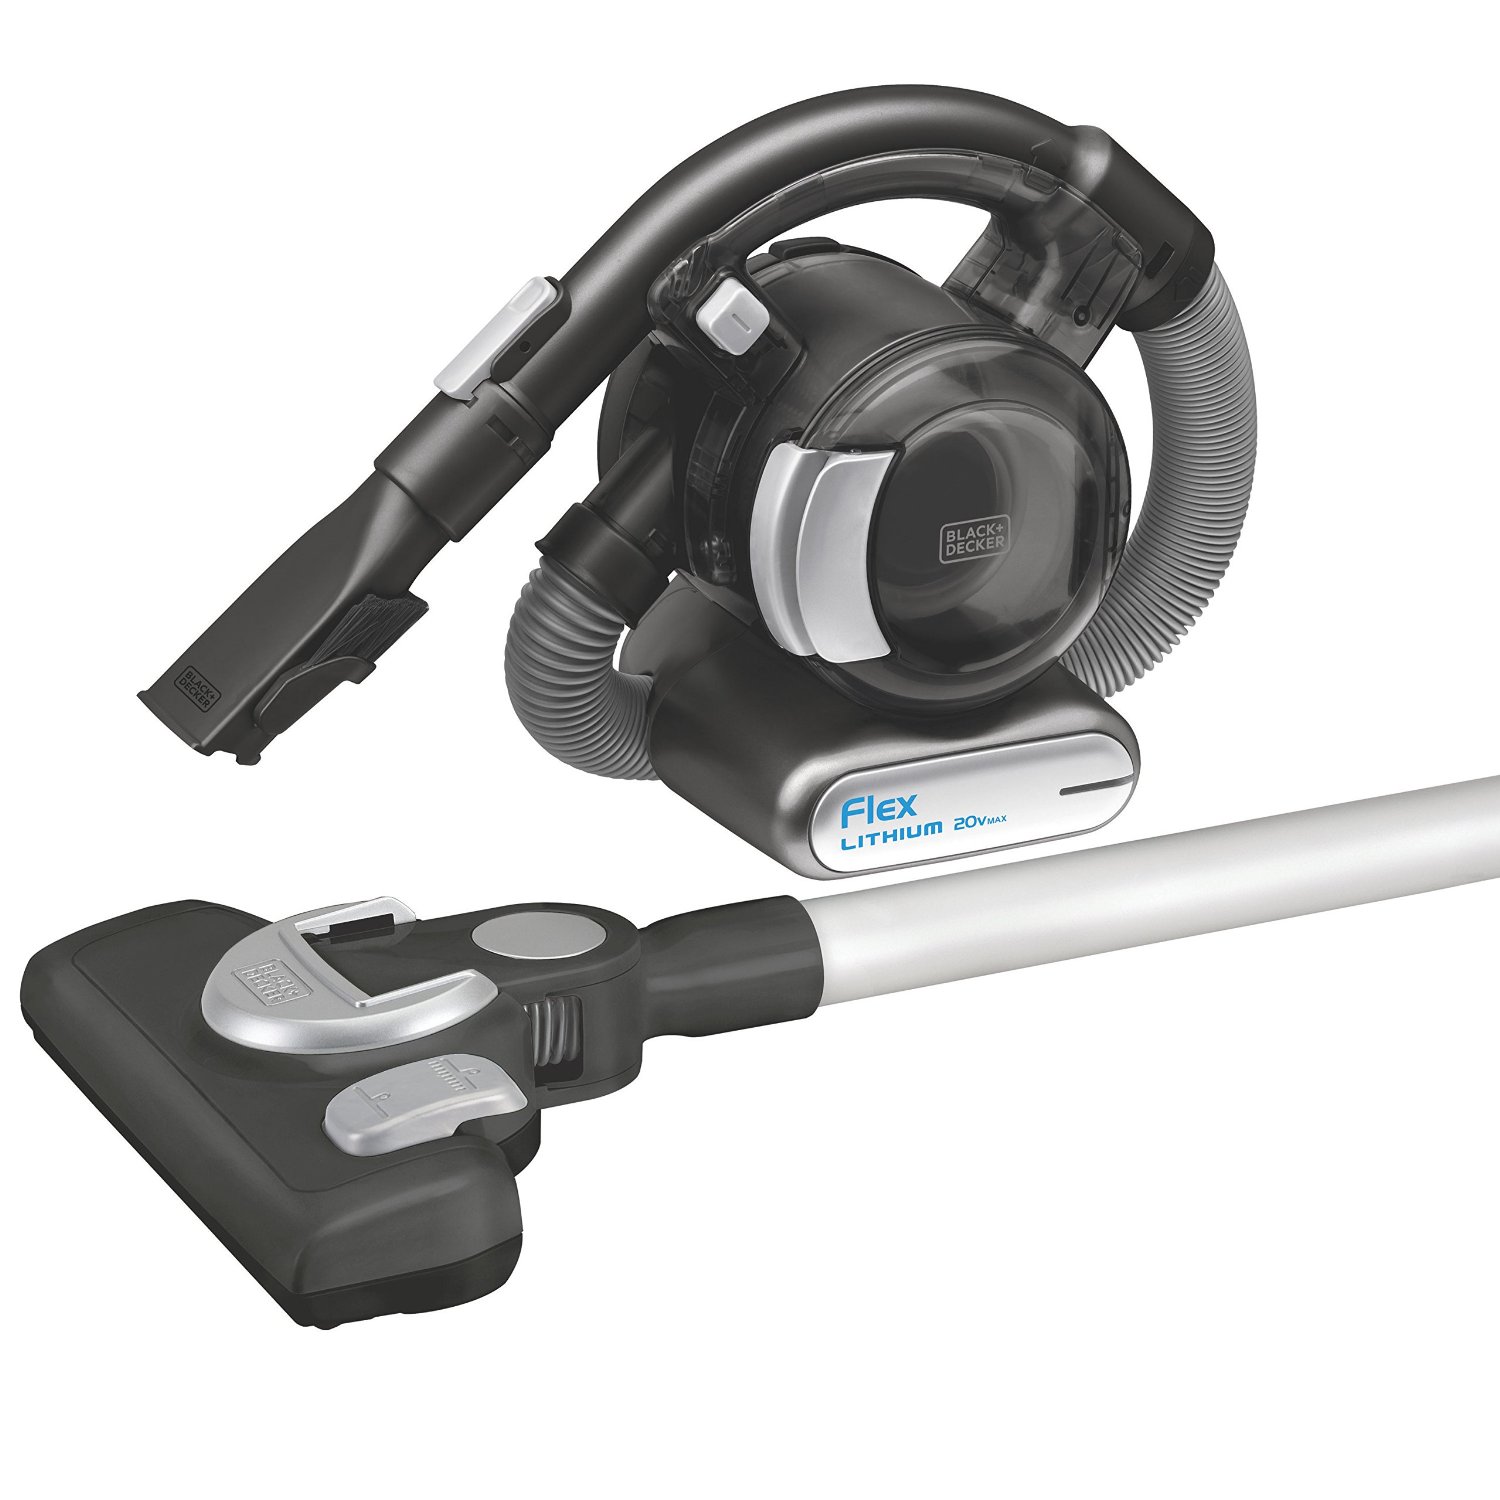 BLACK+DECKER MAX Lithium Flex Vacuum with Stick Vacuum Floor Head and Pet Hair Brush, 20-volt – Cordless – Just $71.00!